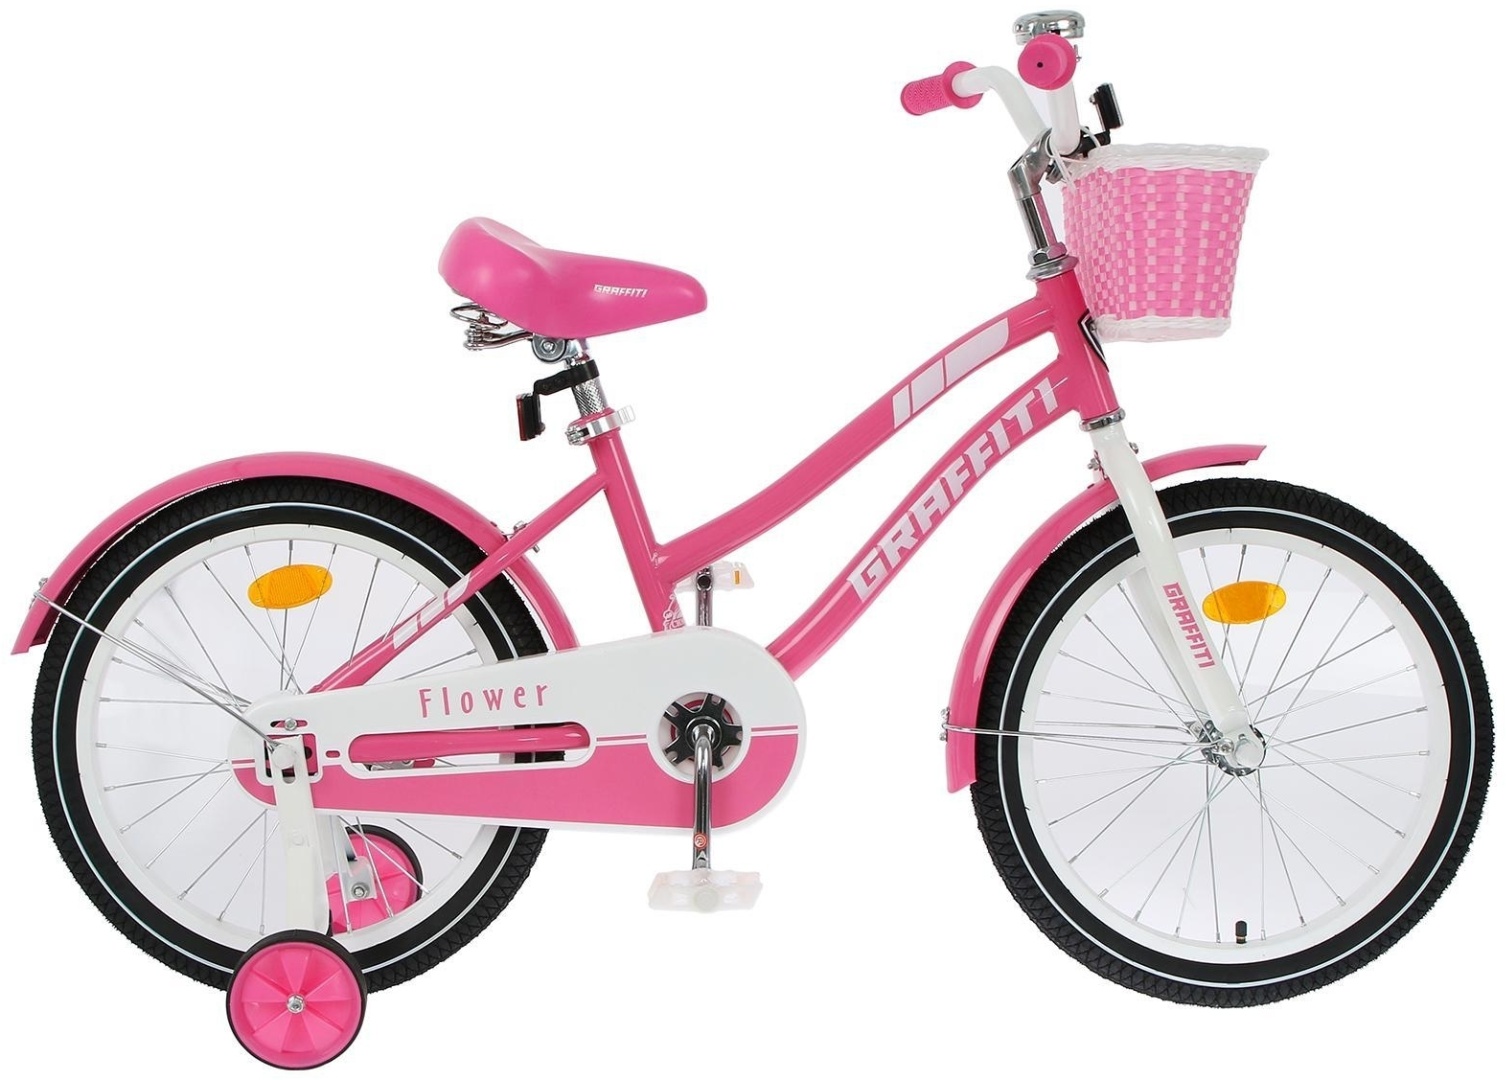 Велосипед 18 розовый. Велосипед Graffiti 16. Велосипед 18" Graffiti Flower. Actiwell Joy 20" 21 велосипед розовый. Детский велосипед Graffiti Flower 16.